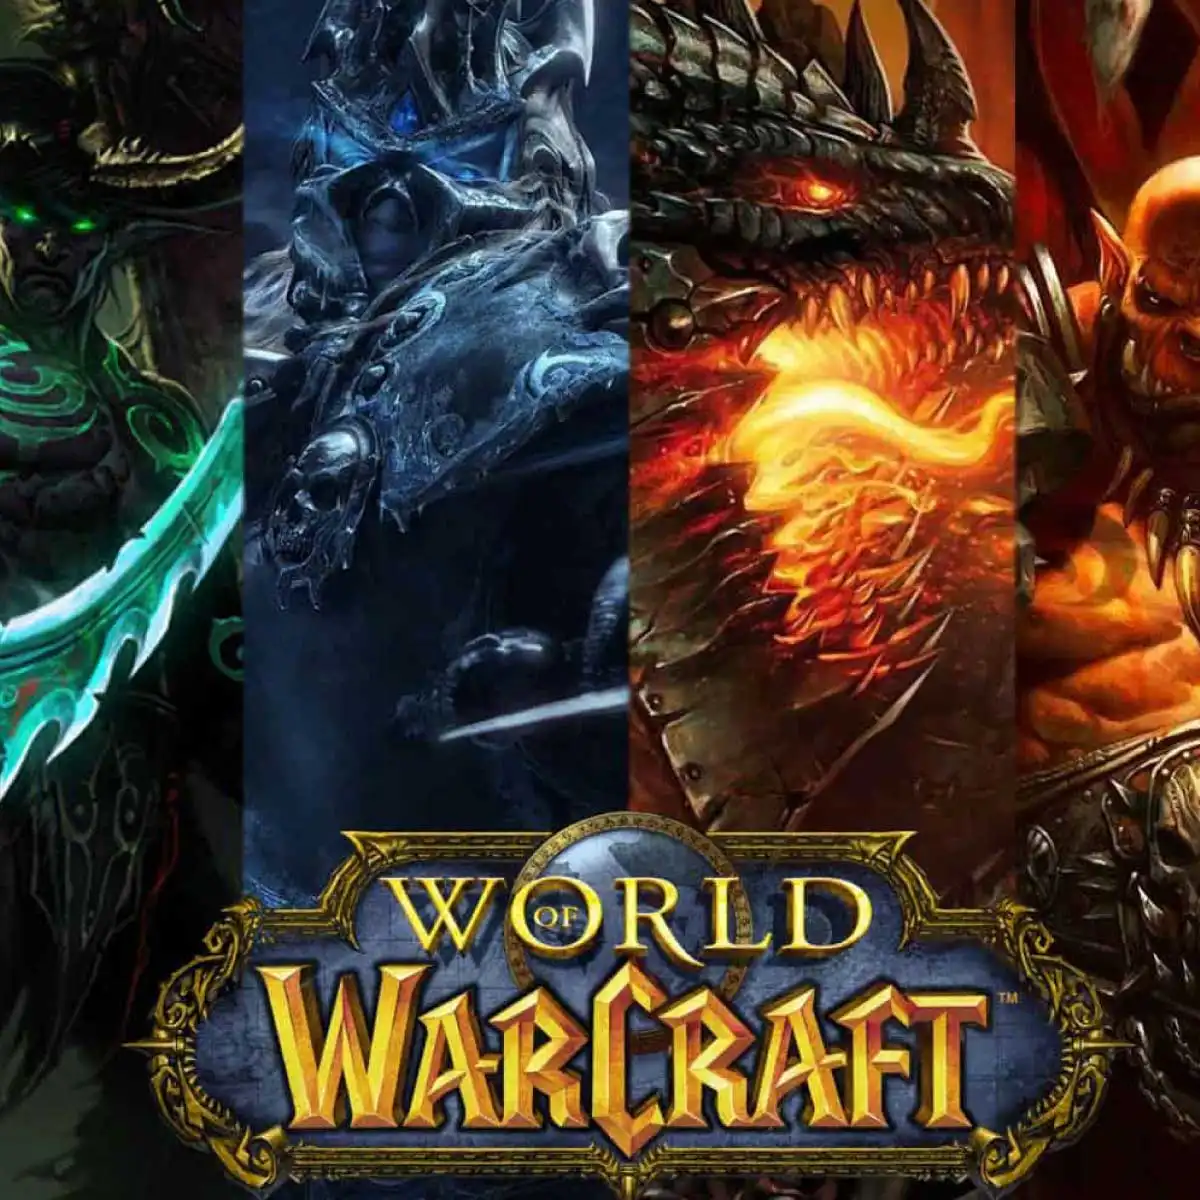 World of Warcraft Hakkında Bilgi